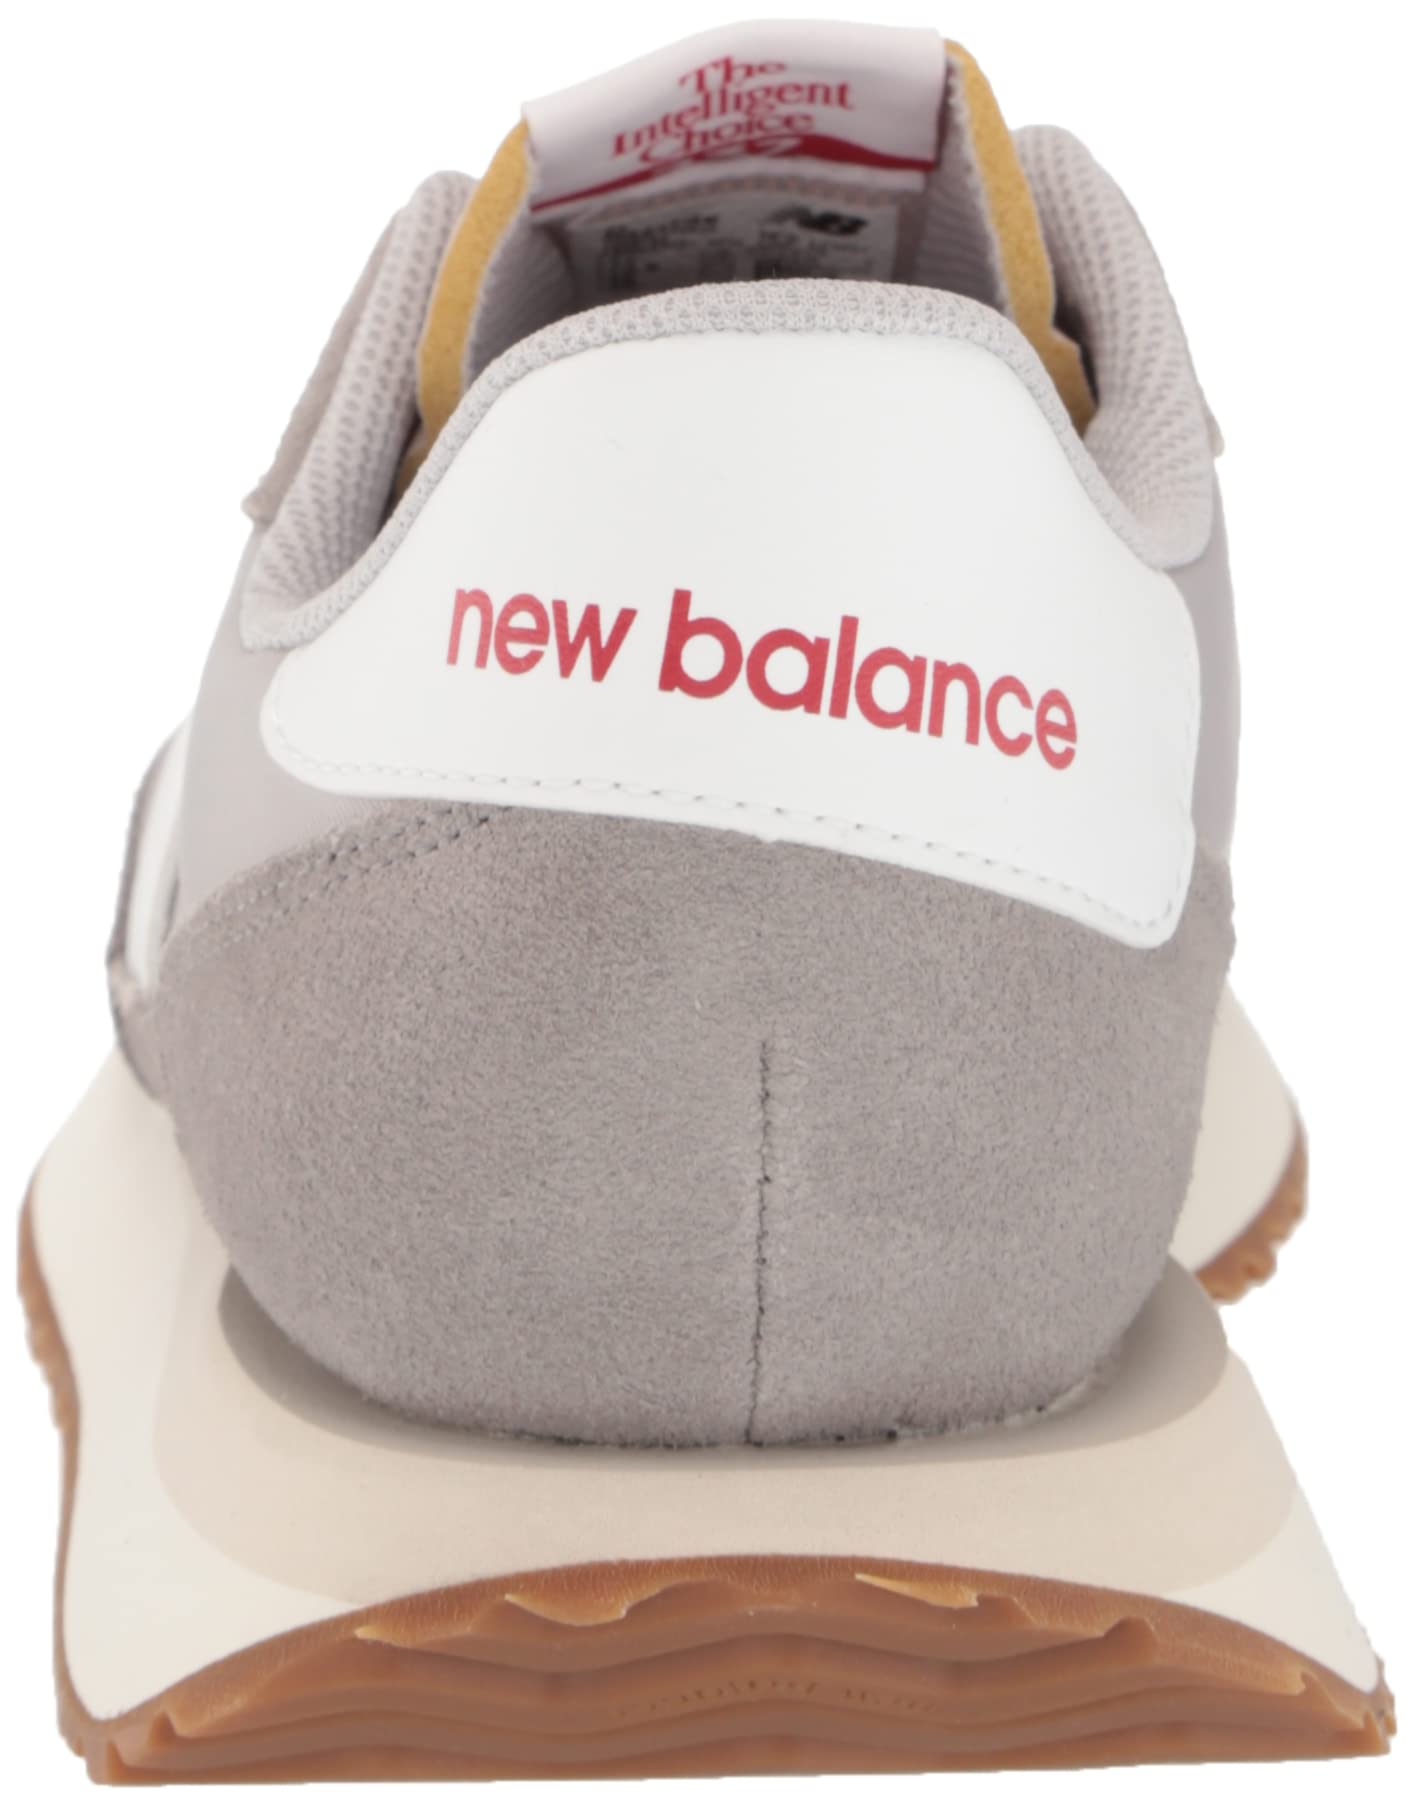 New Balance Men's 237 V1 Classic Sneaker